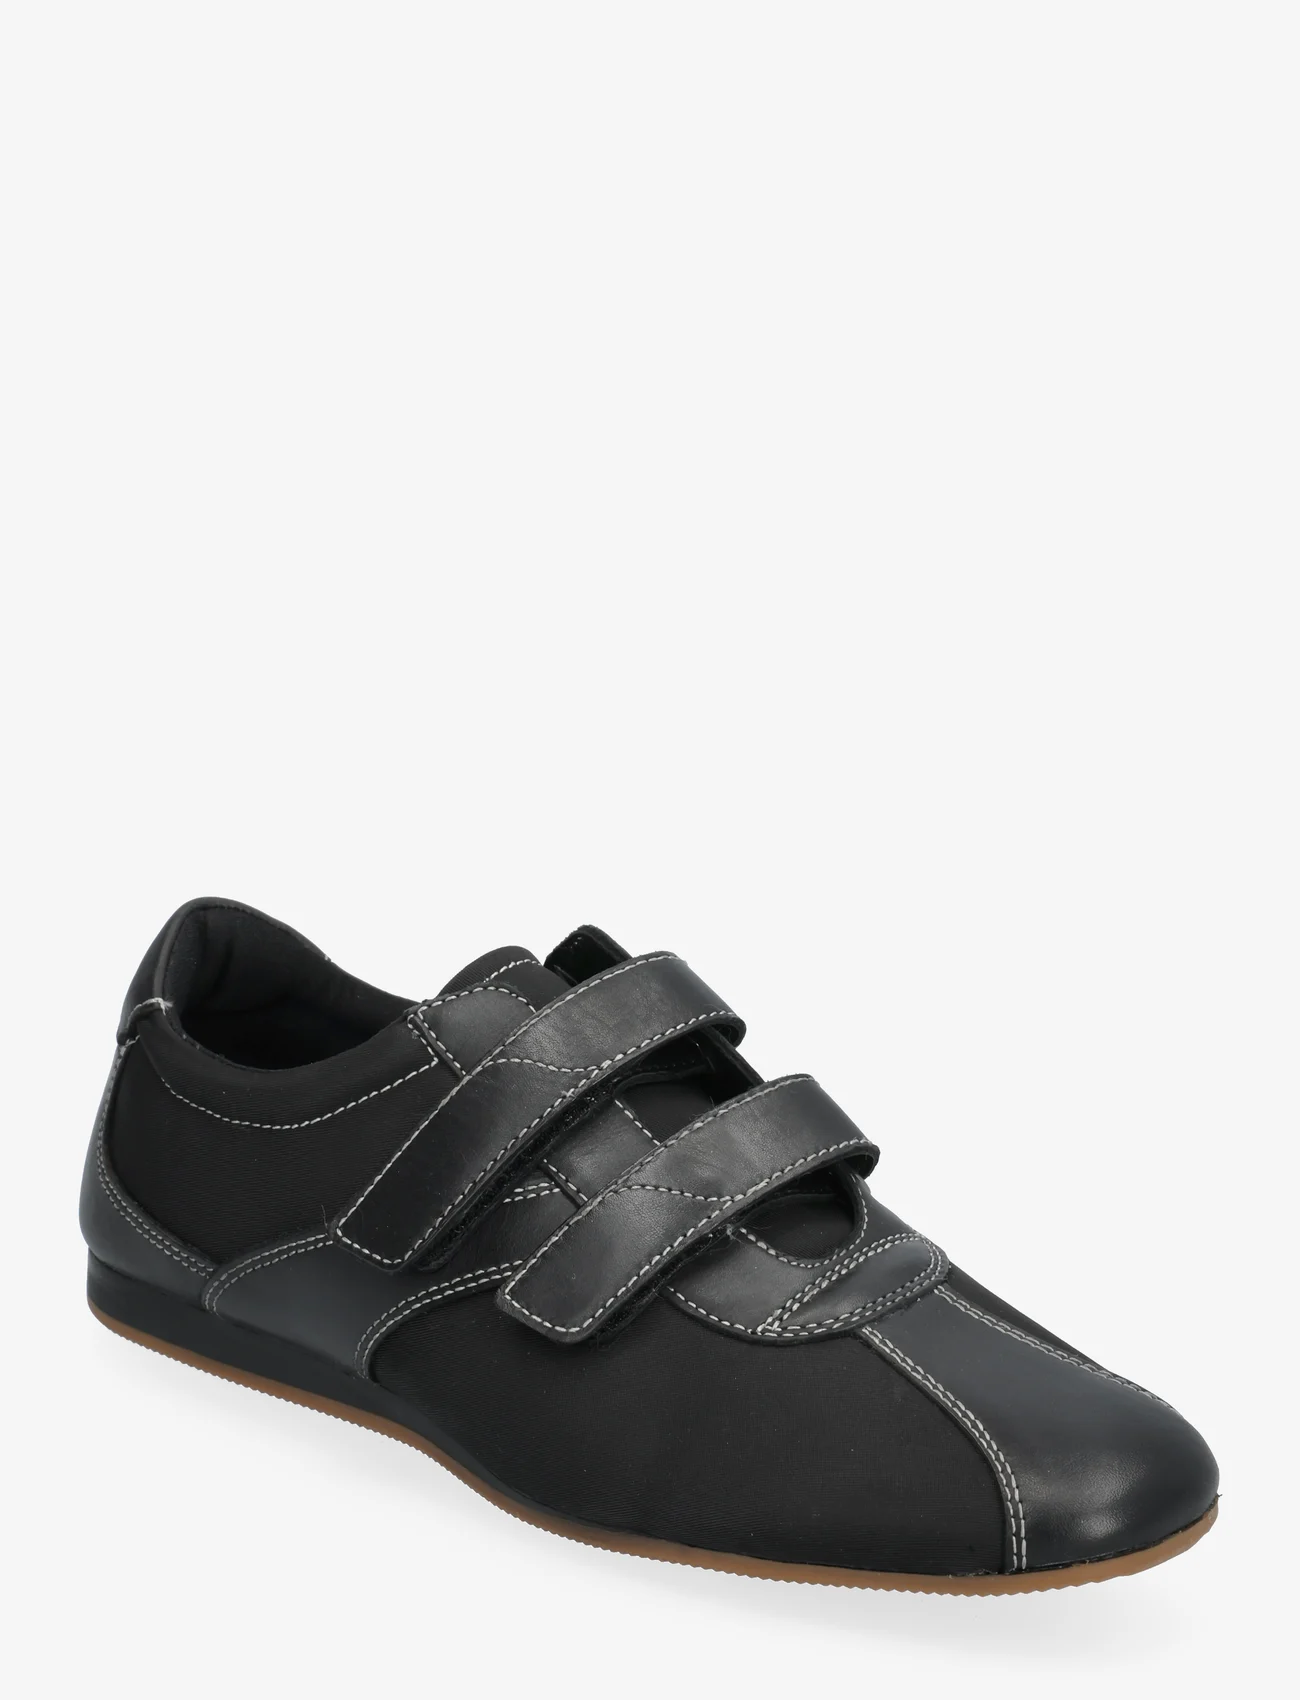 VAGABOND - HILLARY - sneakers med lavt skaft - black - 1